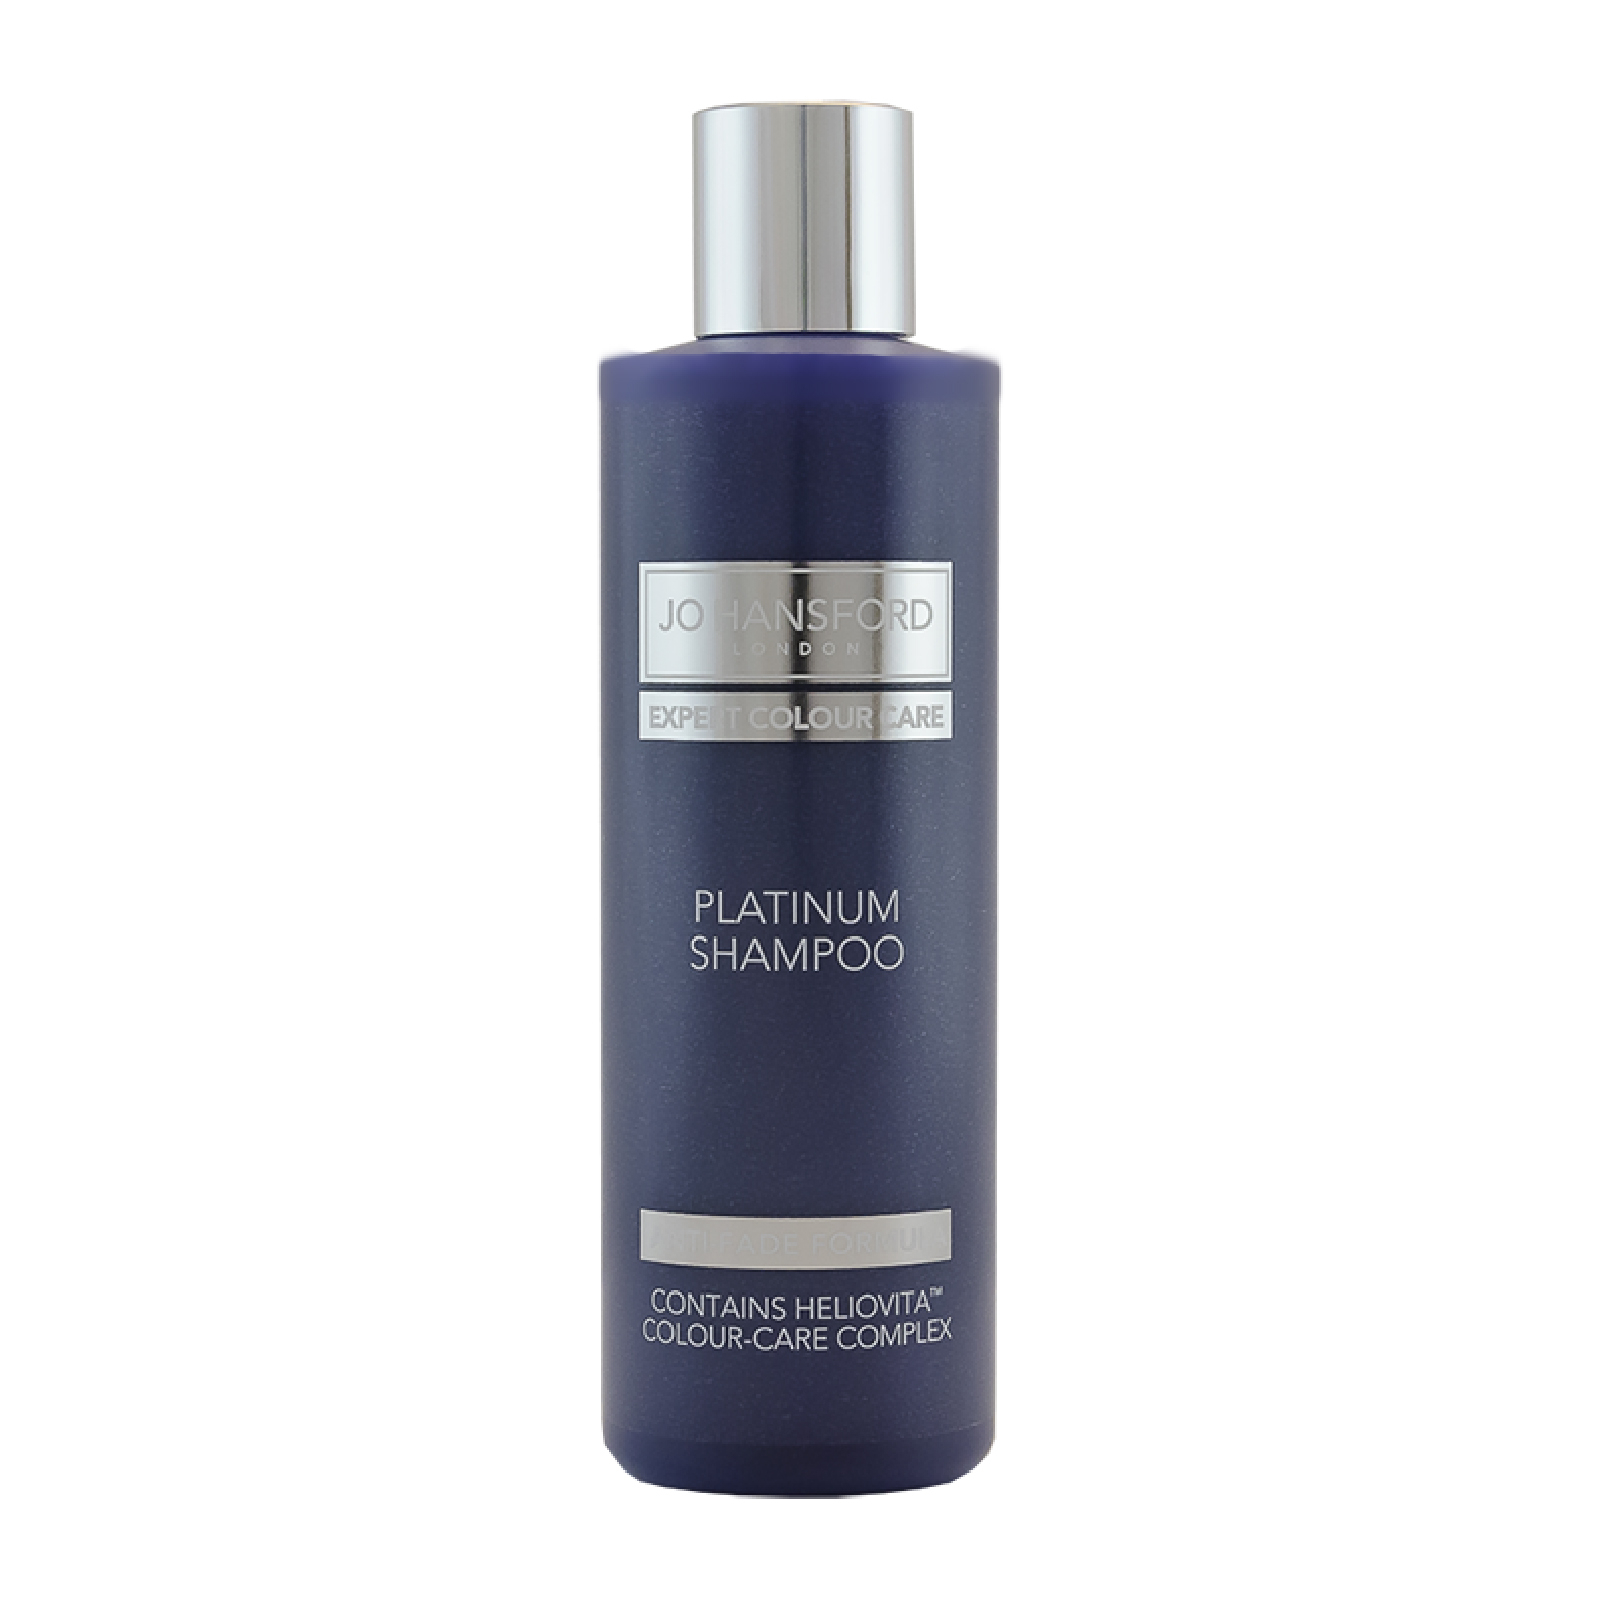 El champú Expert Colour Care Platinum Shampoo de Jo Hansford